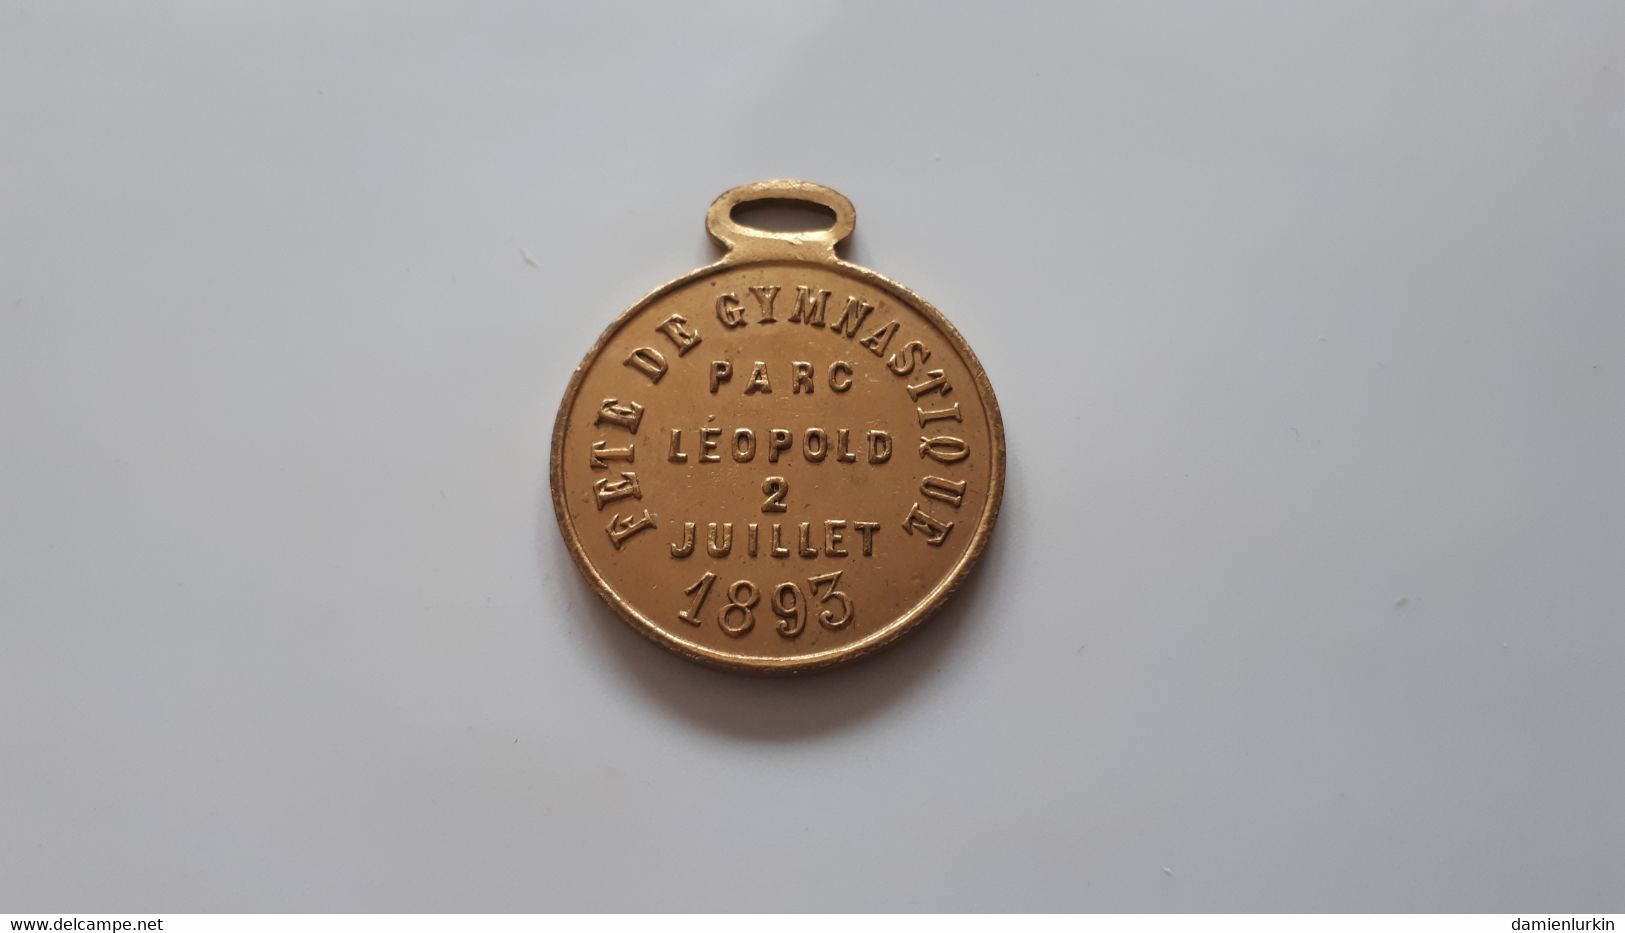 BELGIQUE LEOPOLD II MEDAILLE FETE DE LA GYMNASTIQUE PARC LEOPOLD 2 JUILLET 1893 34/28MM 7GR - Monarquía / Nobleza